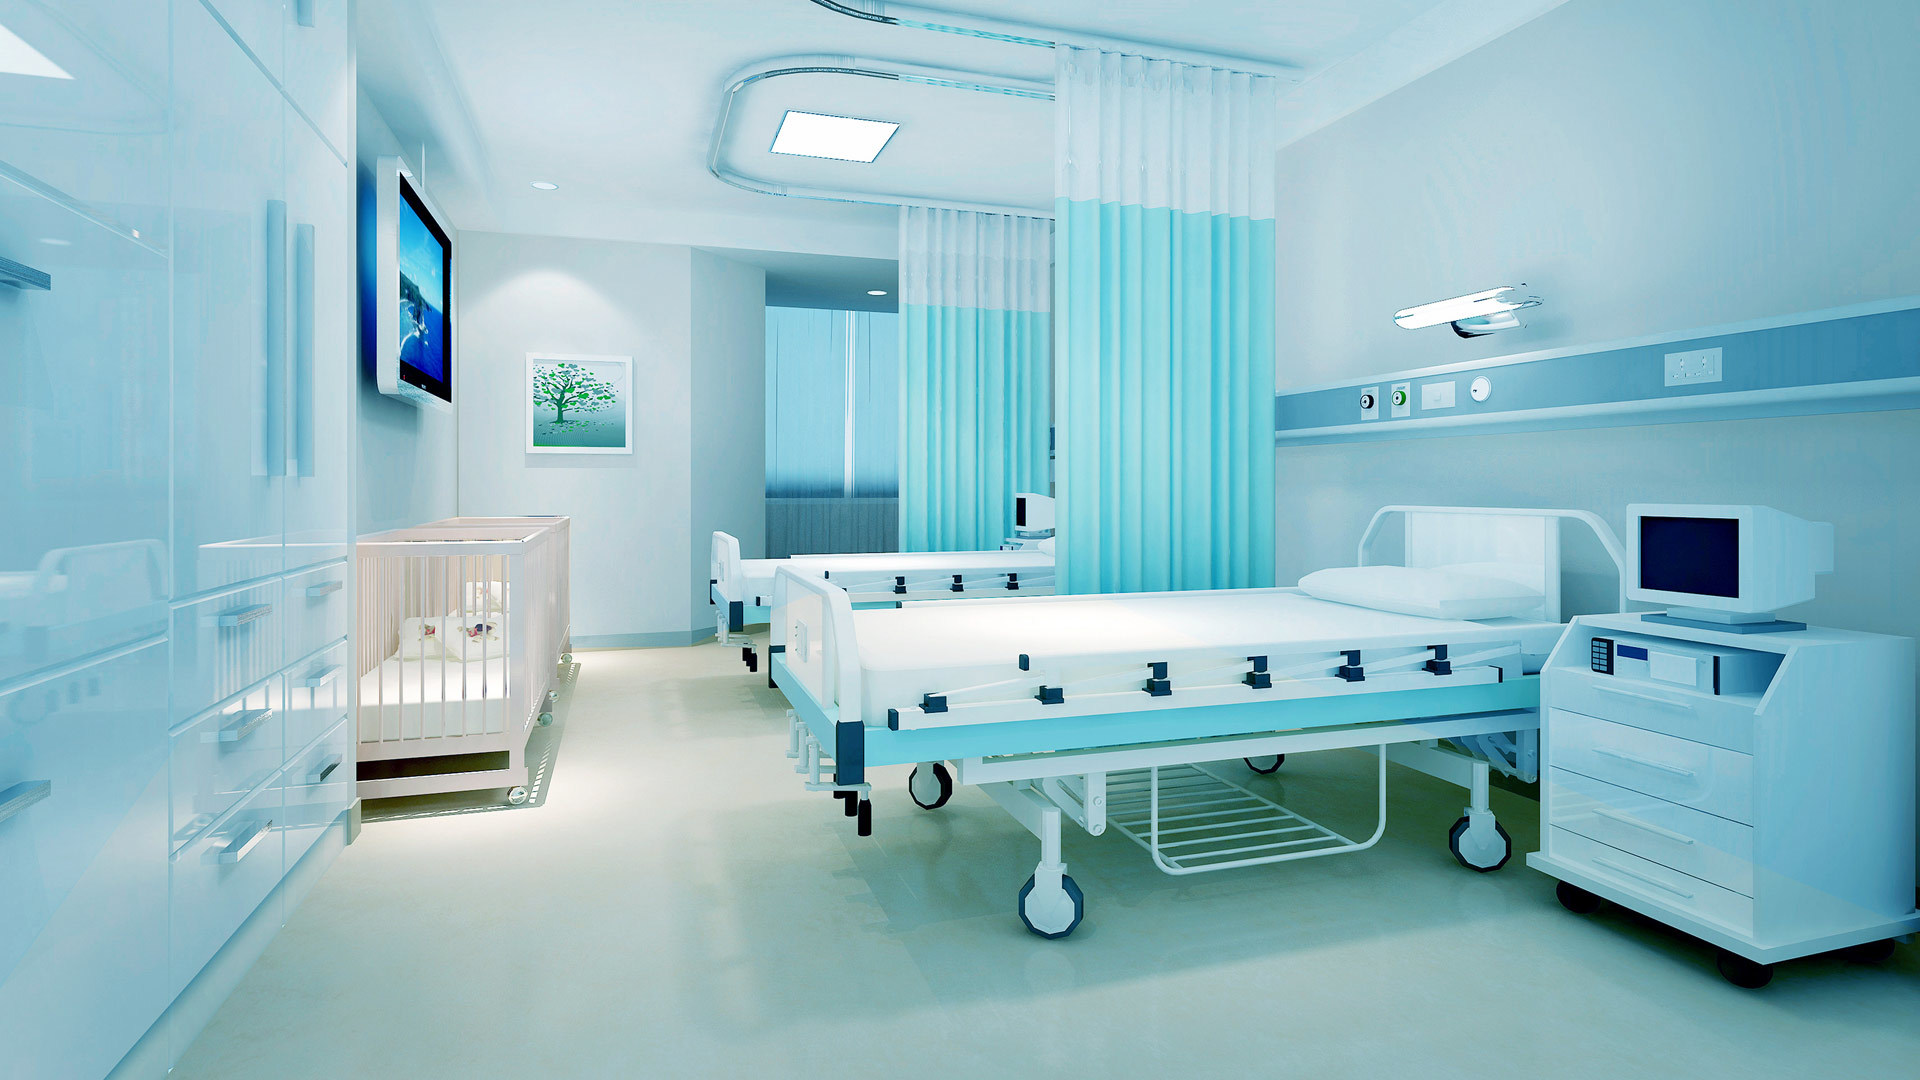 公司主要產品為手術床、護理床、病床、醫用車、床、柜、椅、手術室等系列產品。